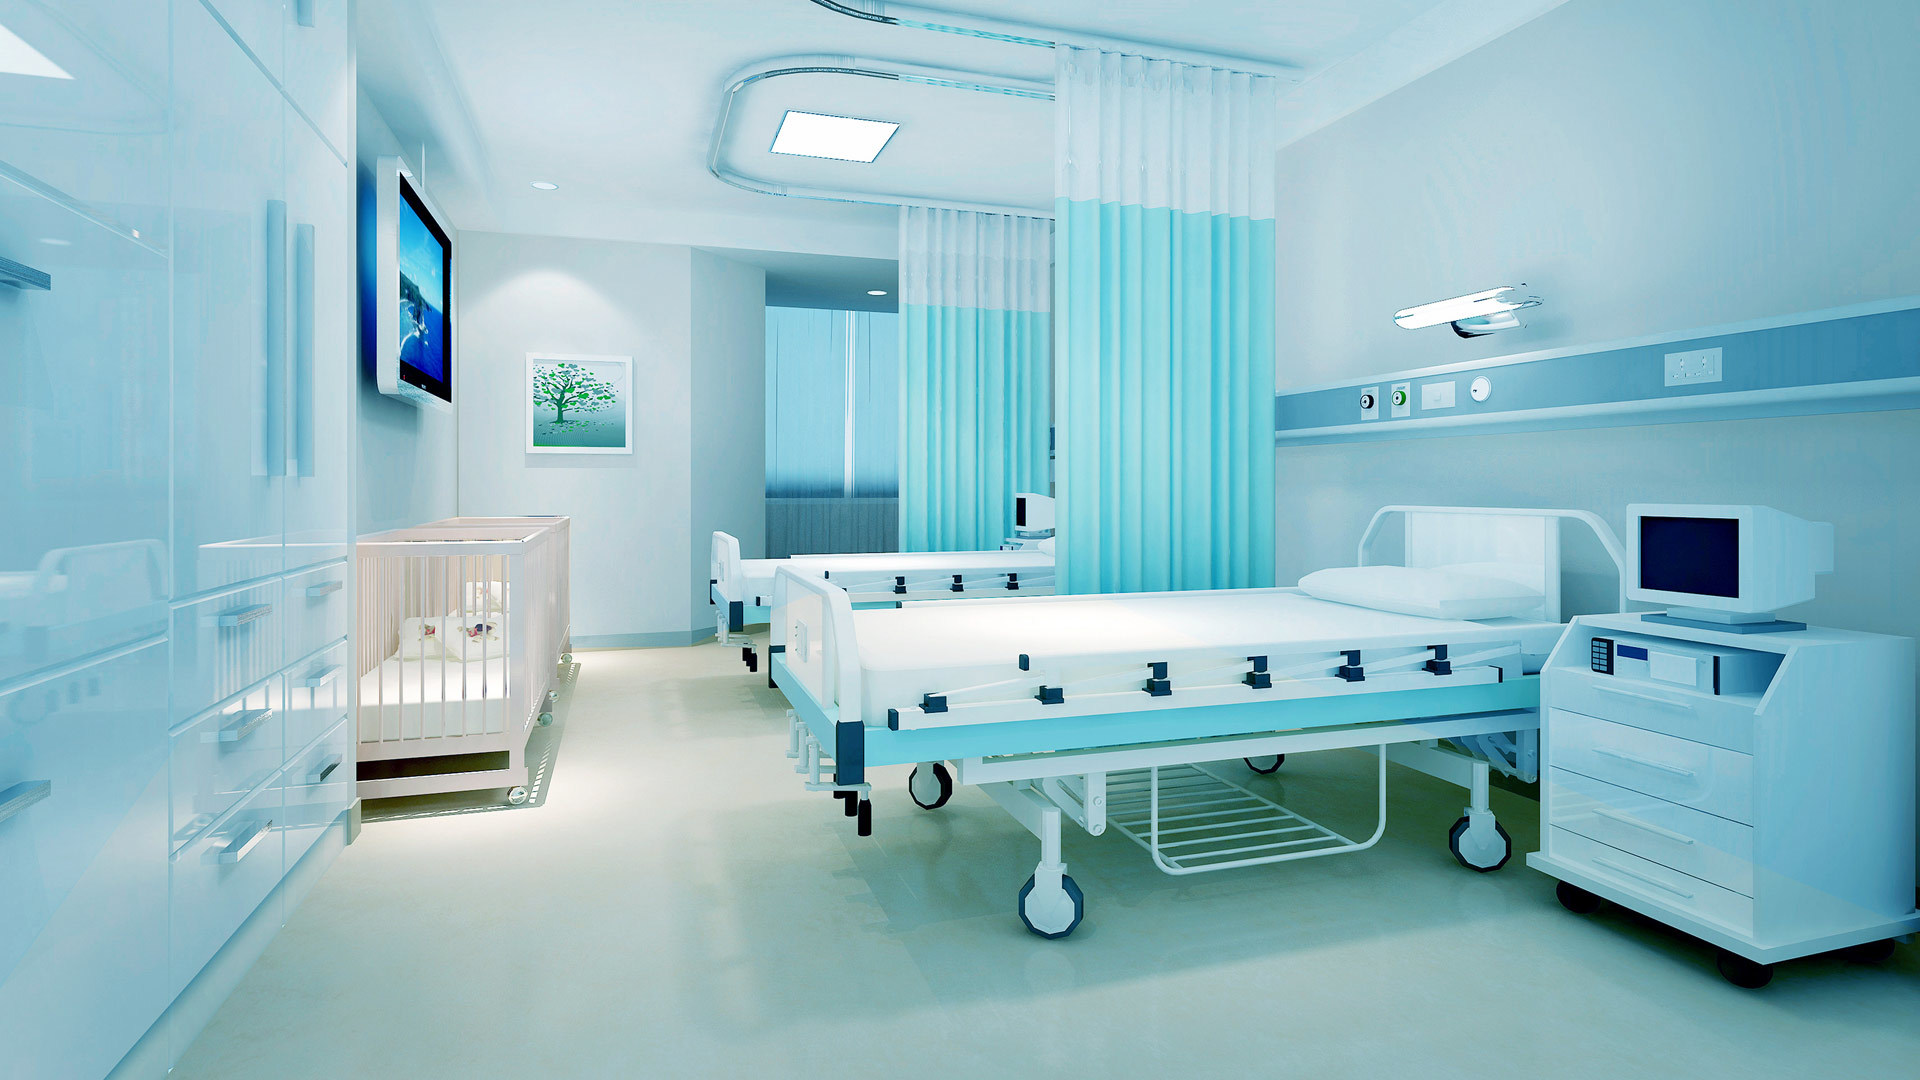 公司主要產品為手術床、護理床、病床、醫用車、床、柜、椅、手術室等系列產品。